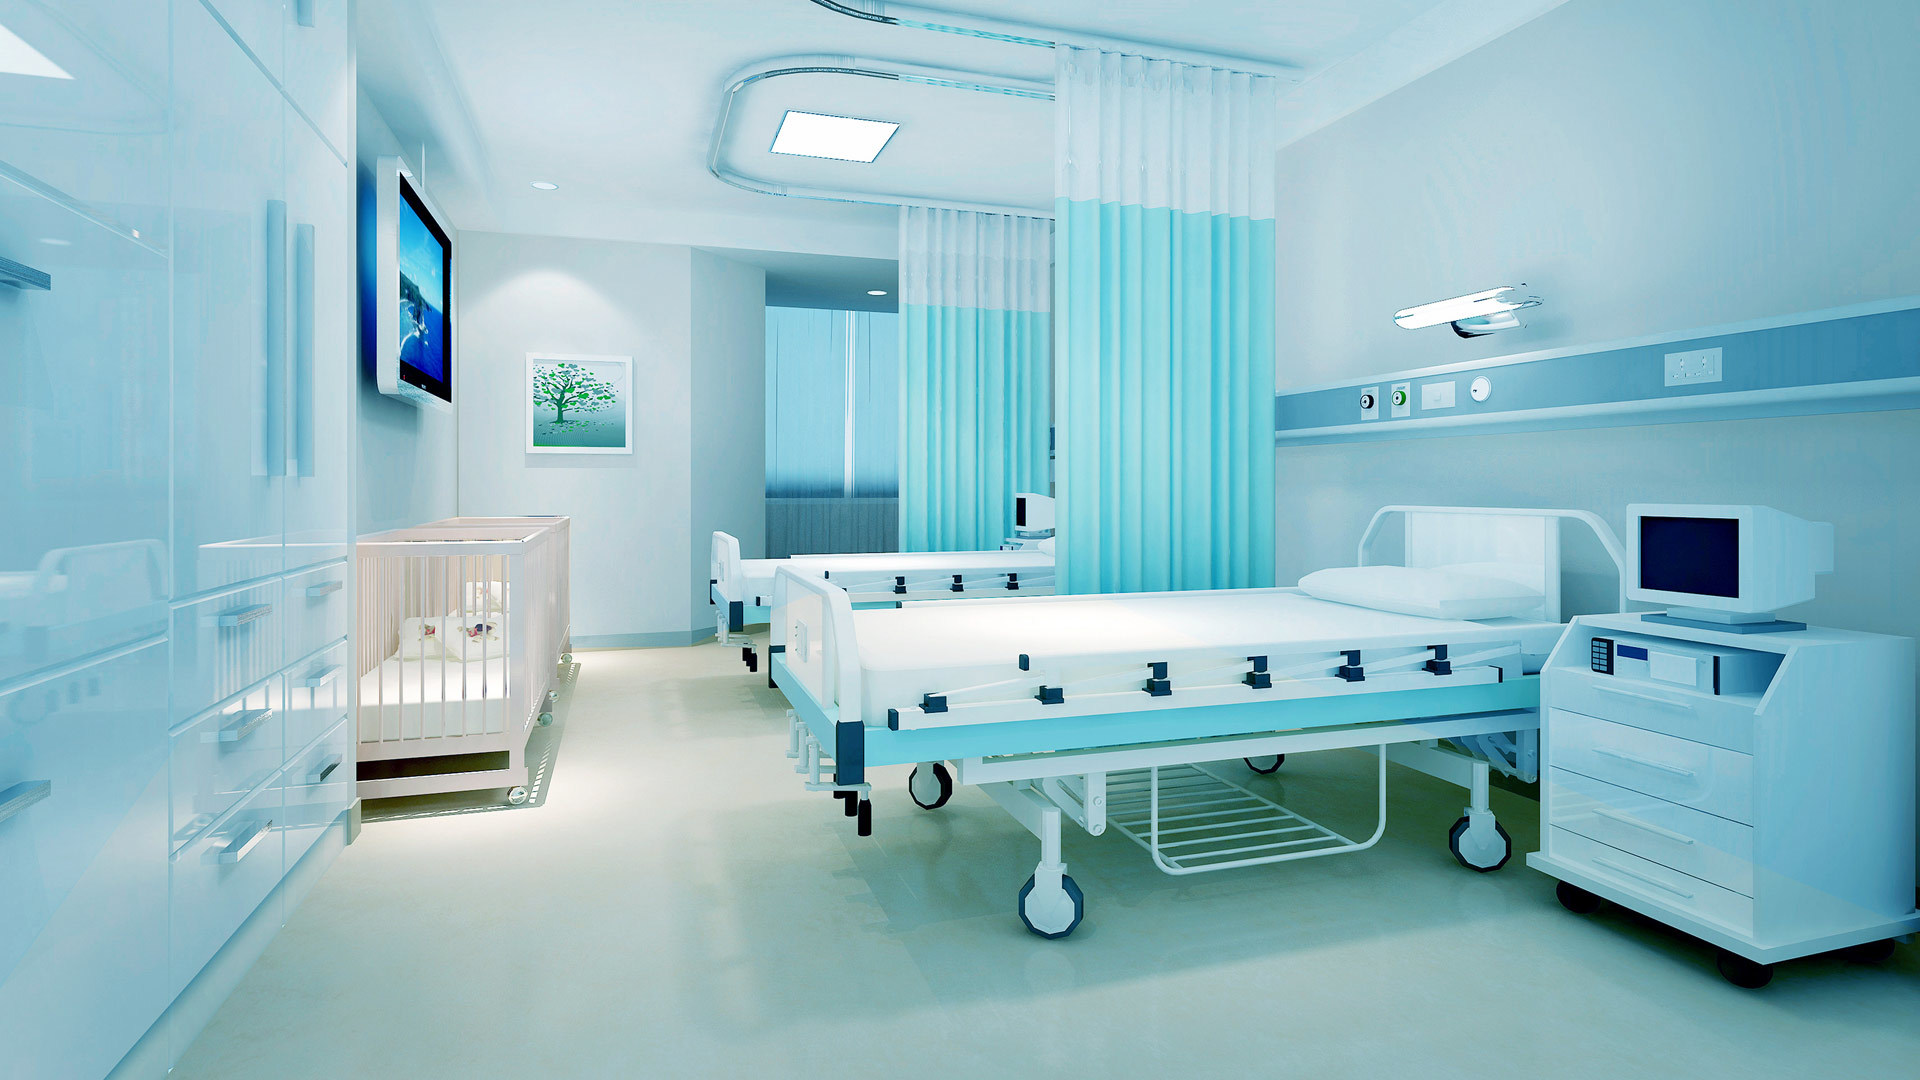 公司主要產品為手術床、護理床、病床、醫用車、床、柜、椅、手術室等系列產品。